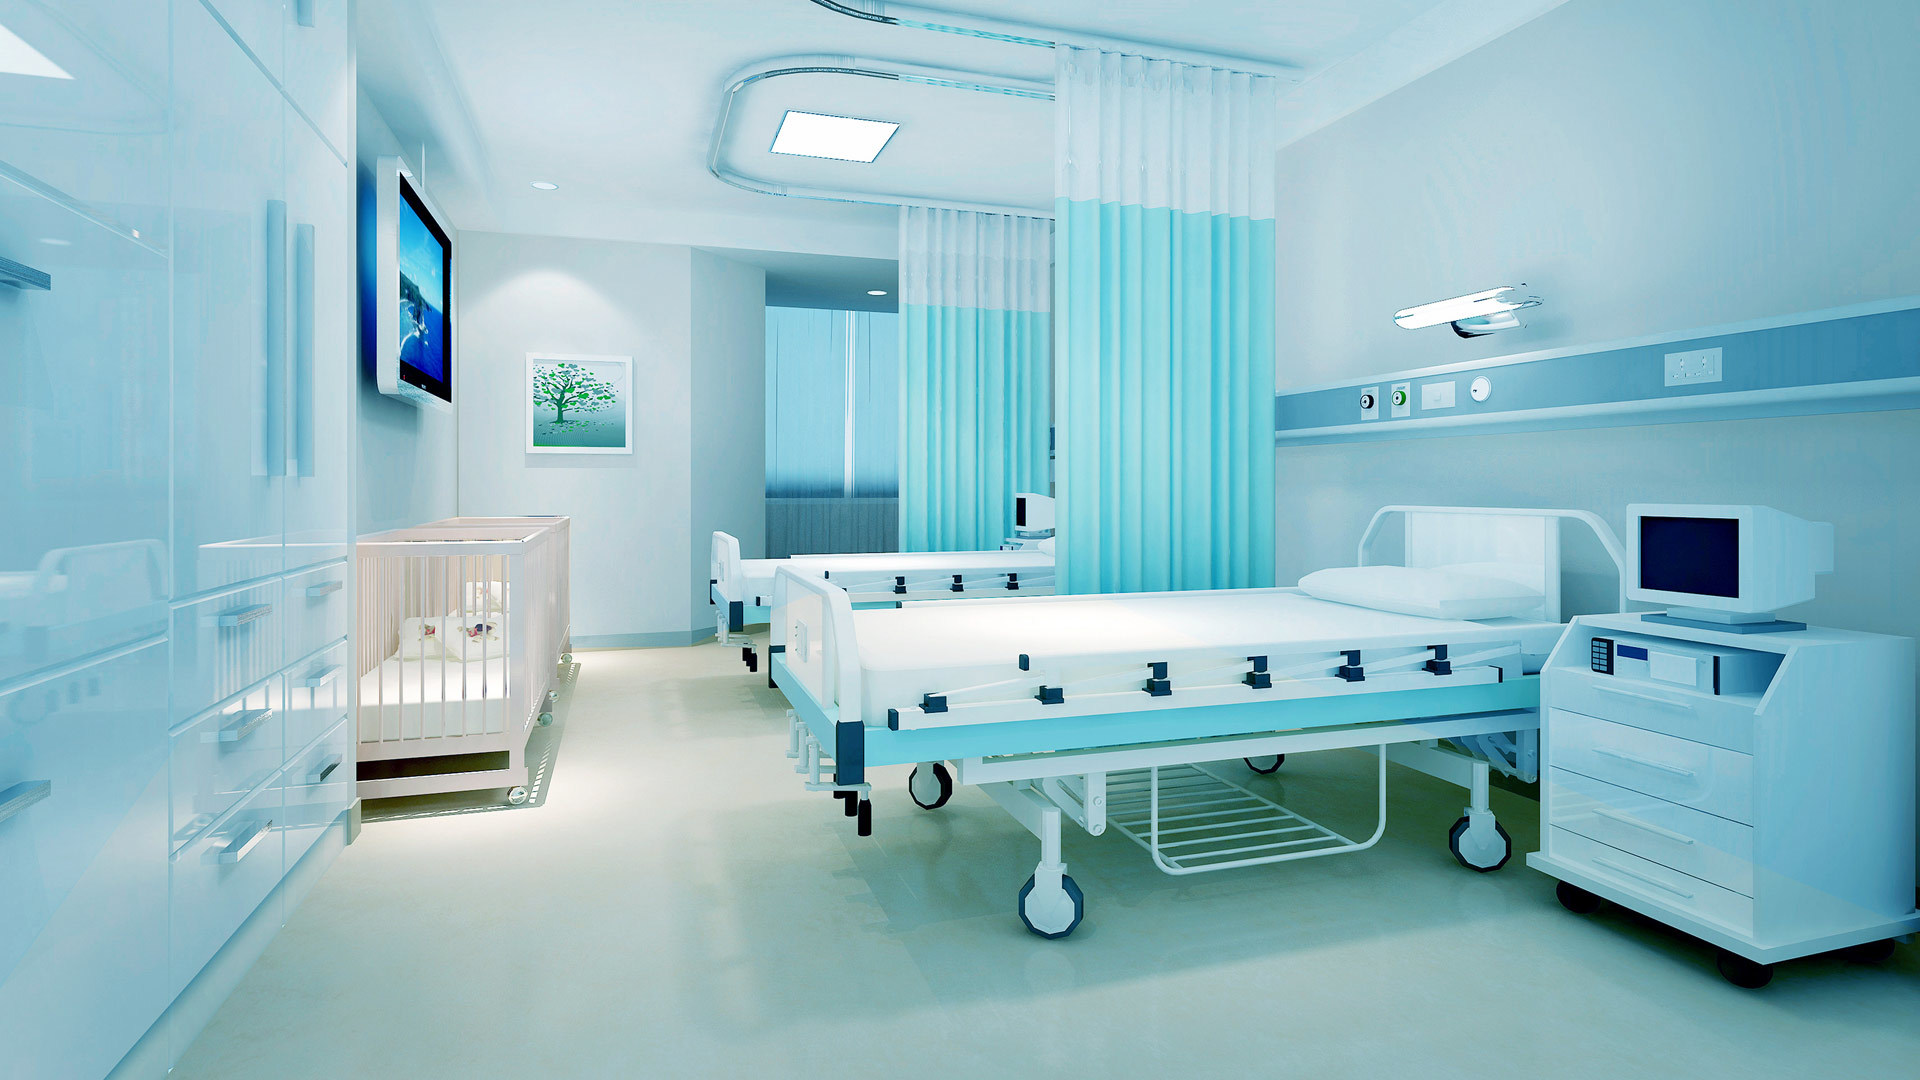 公司主要產品為手術床、護理床、病床、醫用車、床、柜、椅、手術室等系列產品。